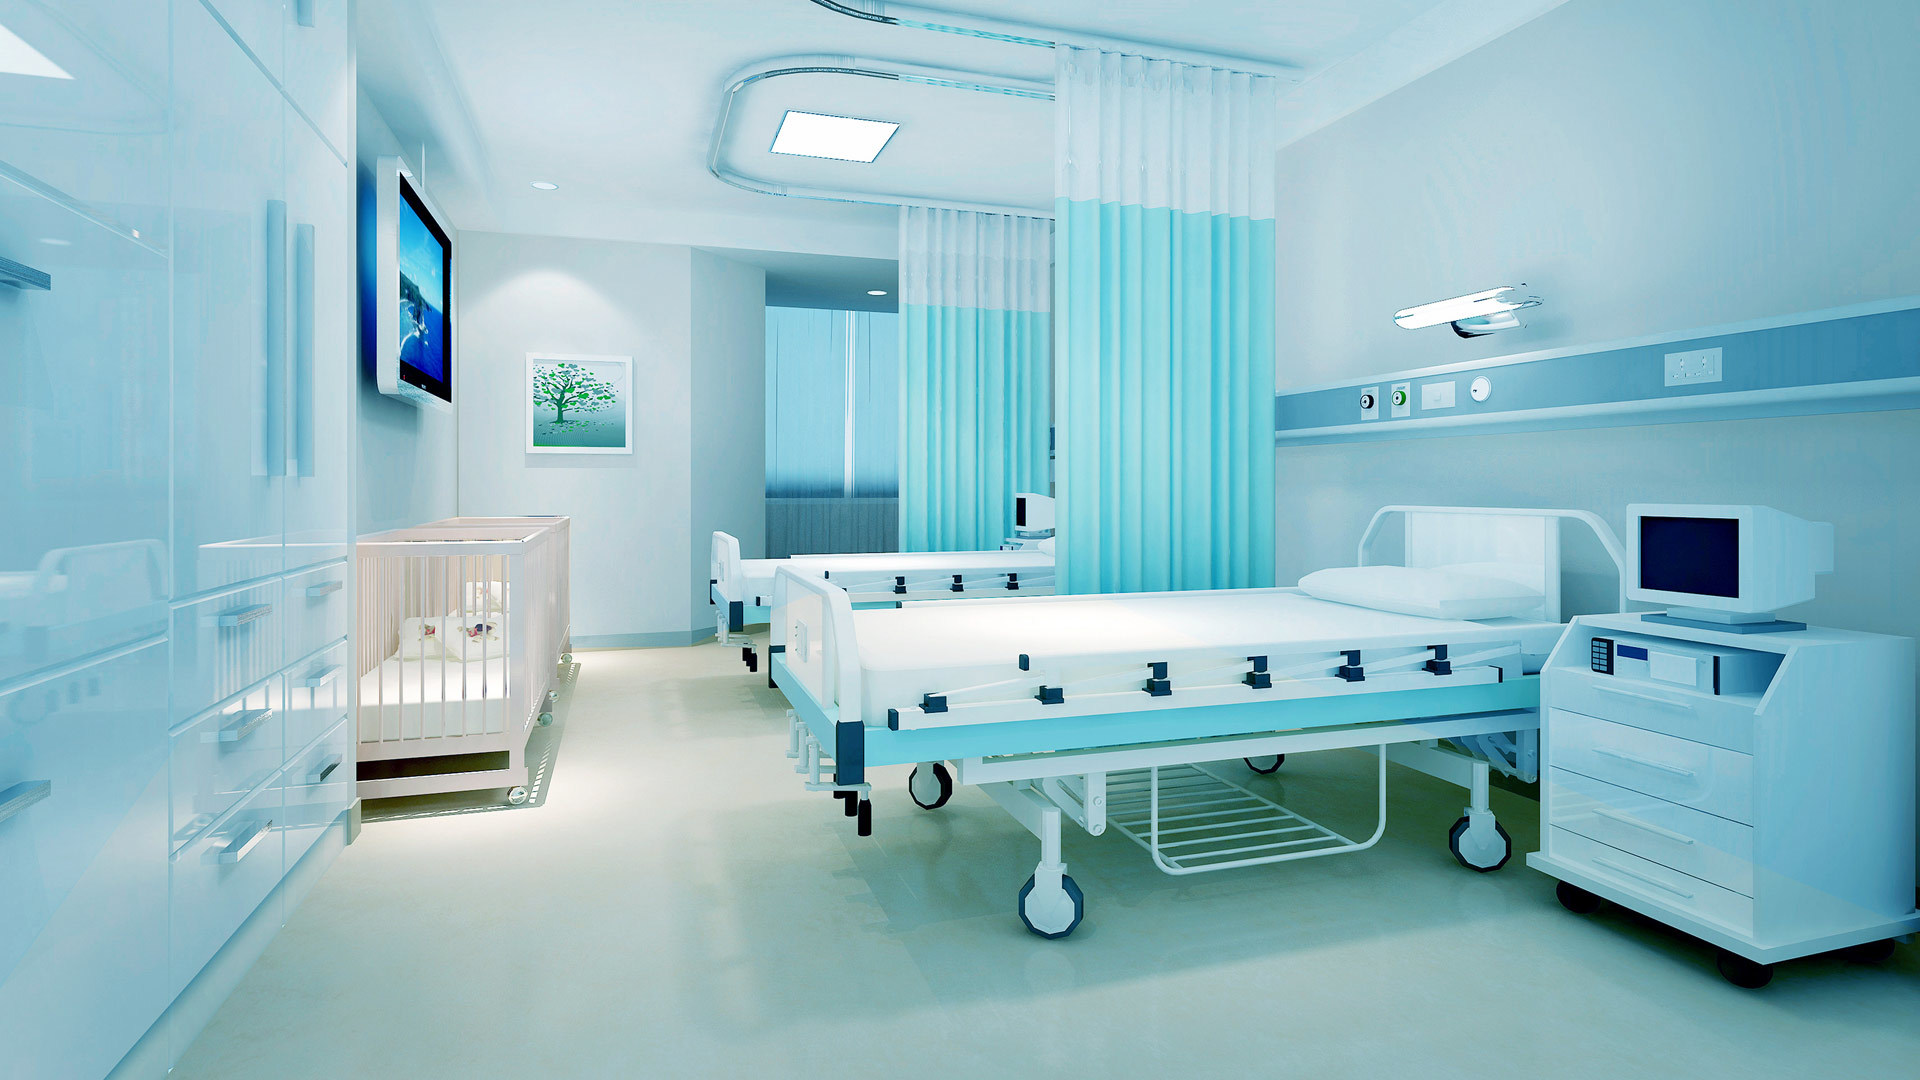 公司主要產品為手術床、護理床、病床、醫用車、床、柜、椅、手術室等系列產品。